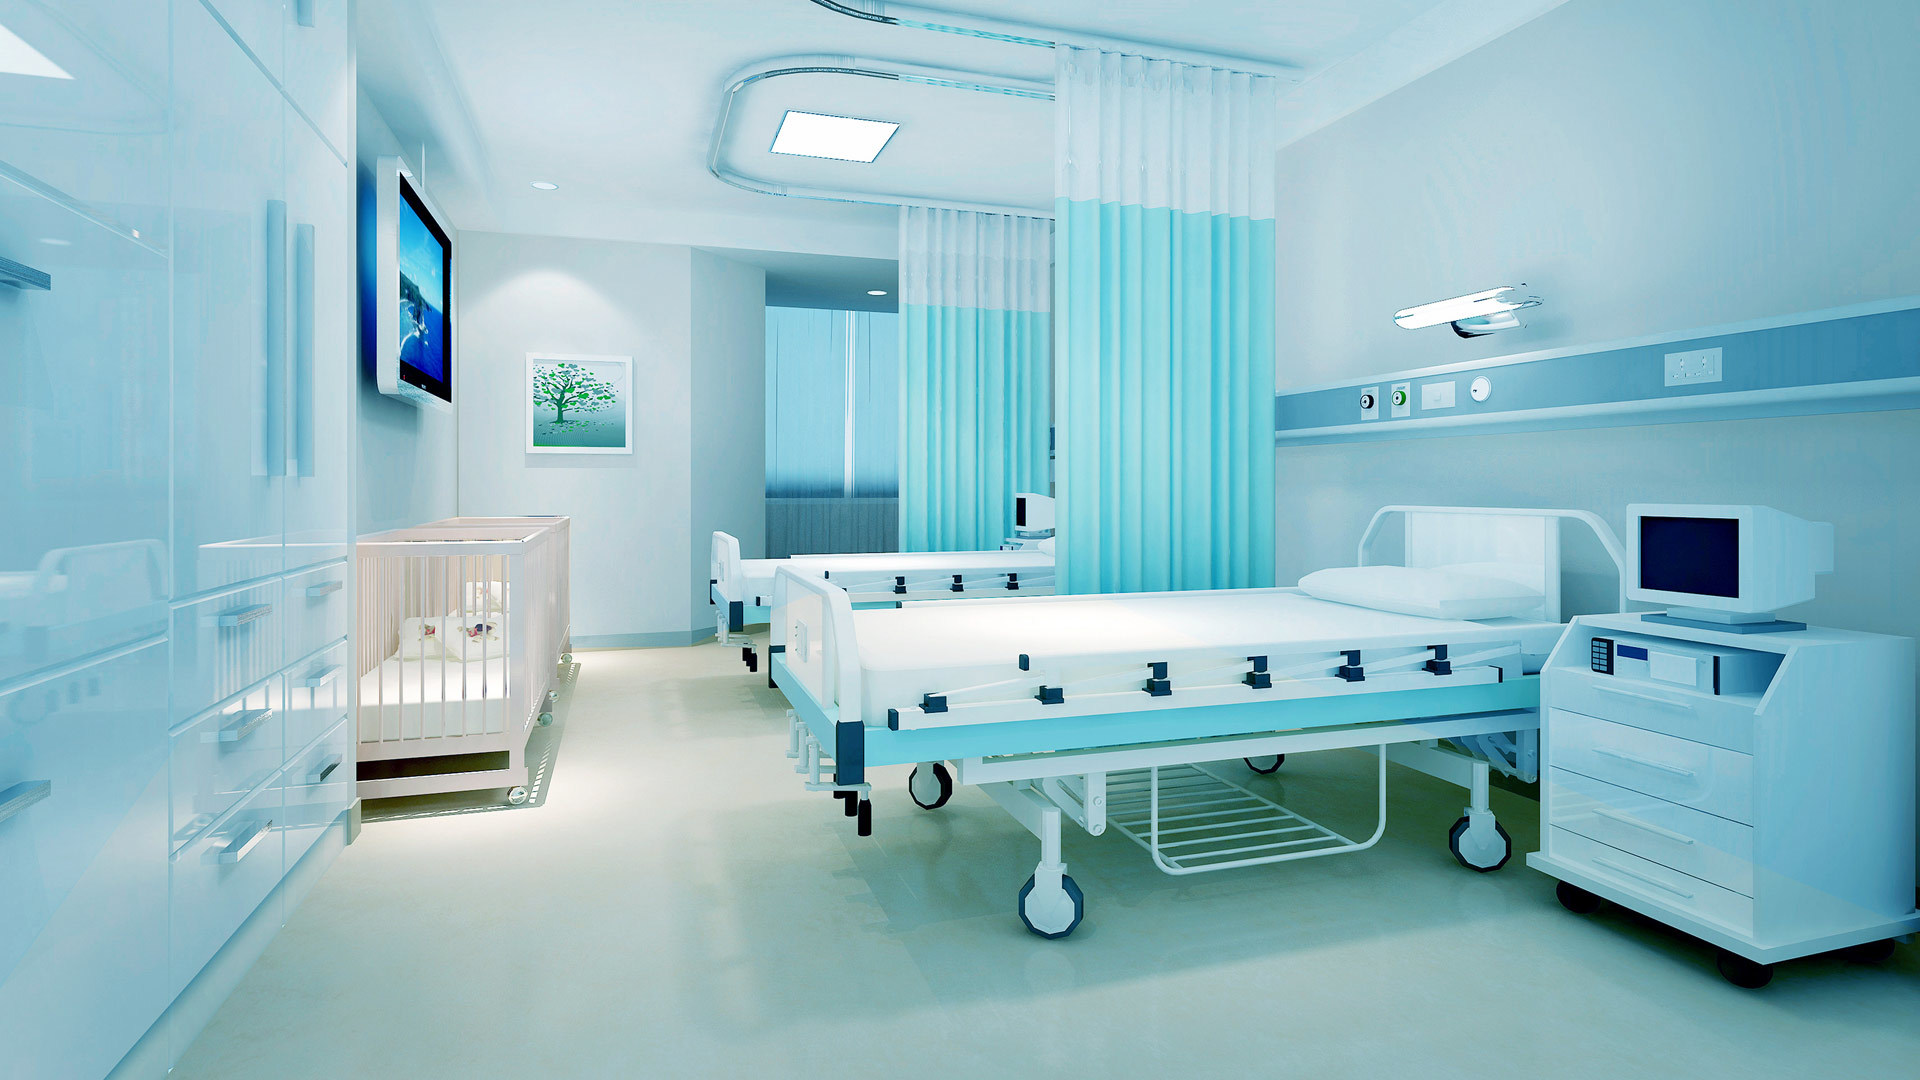 公司主要產品為手術床、護理床、病床、醫用車、床、柜、椅、手術室等系列產品。